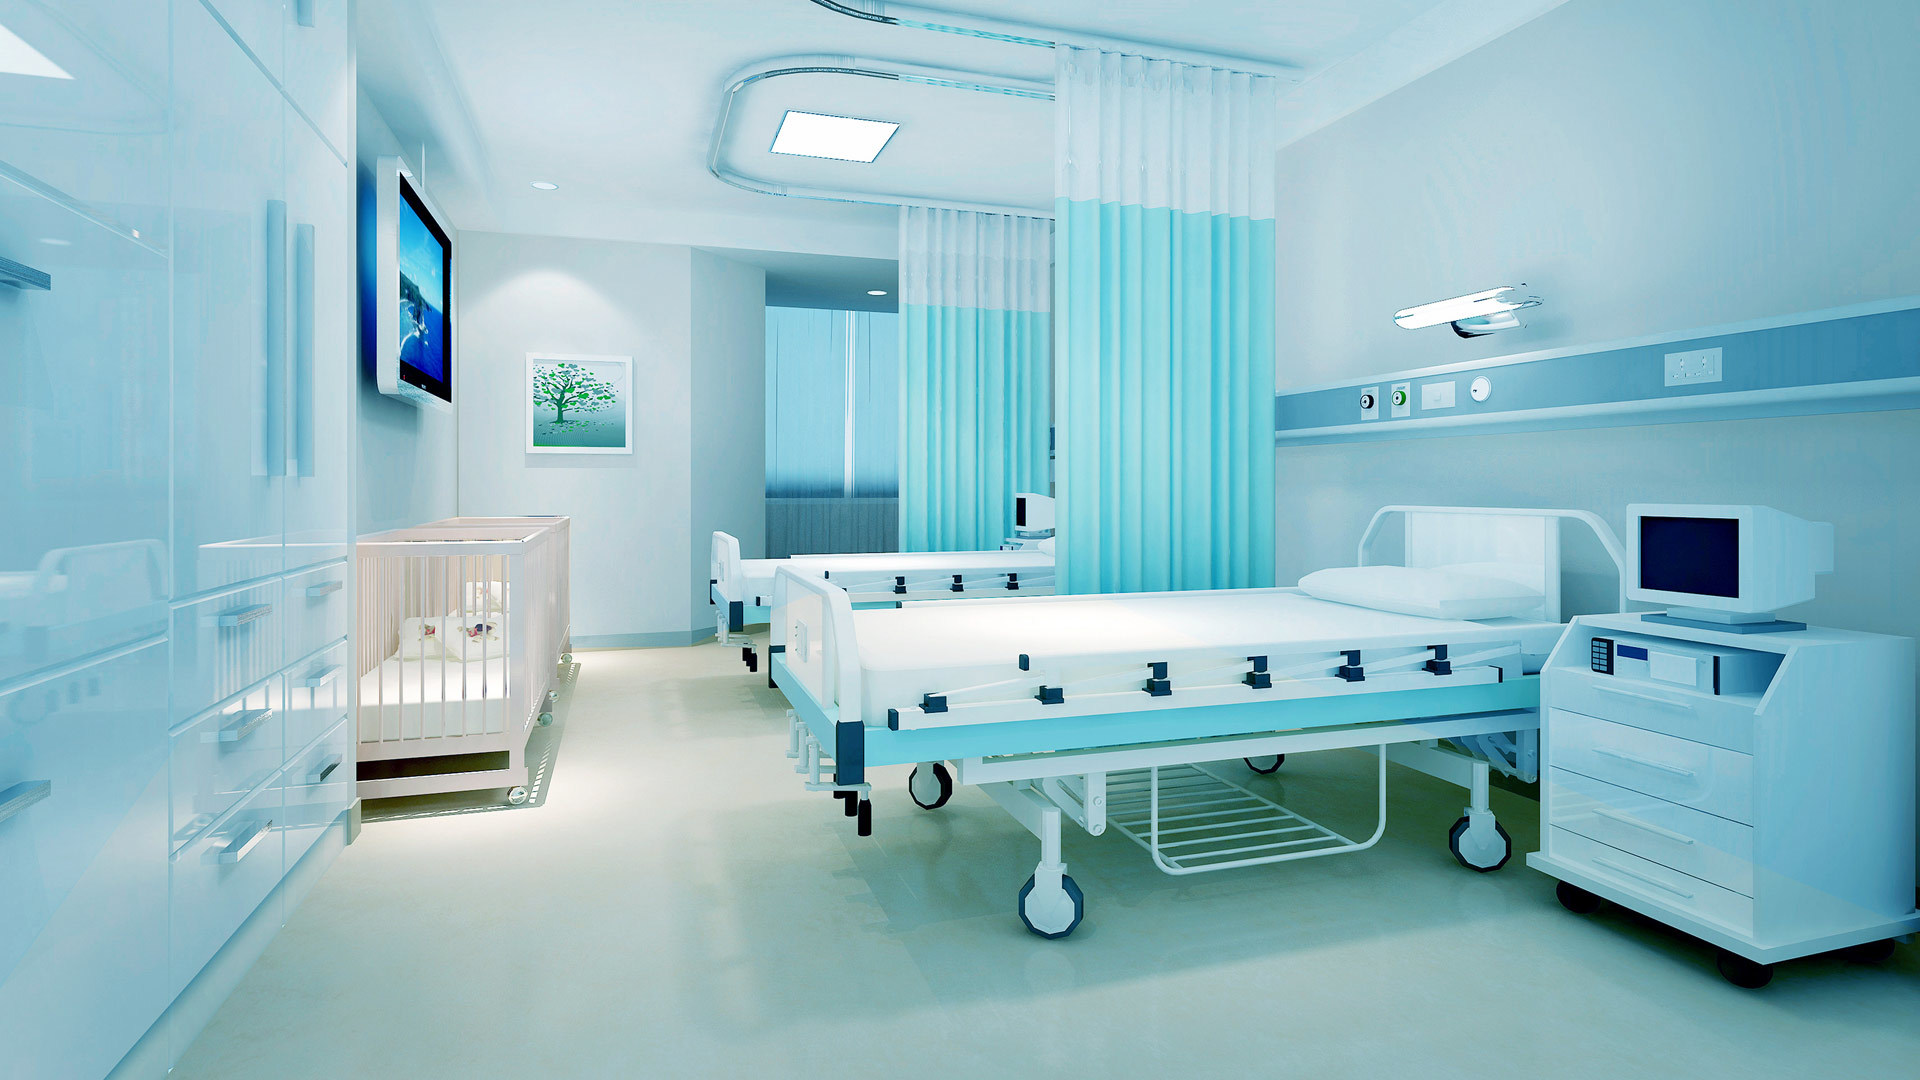 公司主要產品為手術床、護理床、病床、醫用車、床、柜、椅、手術室等系列產品。